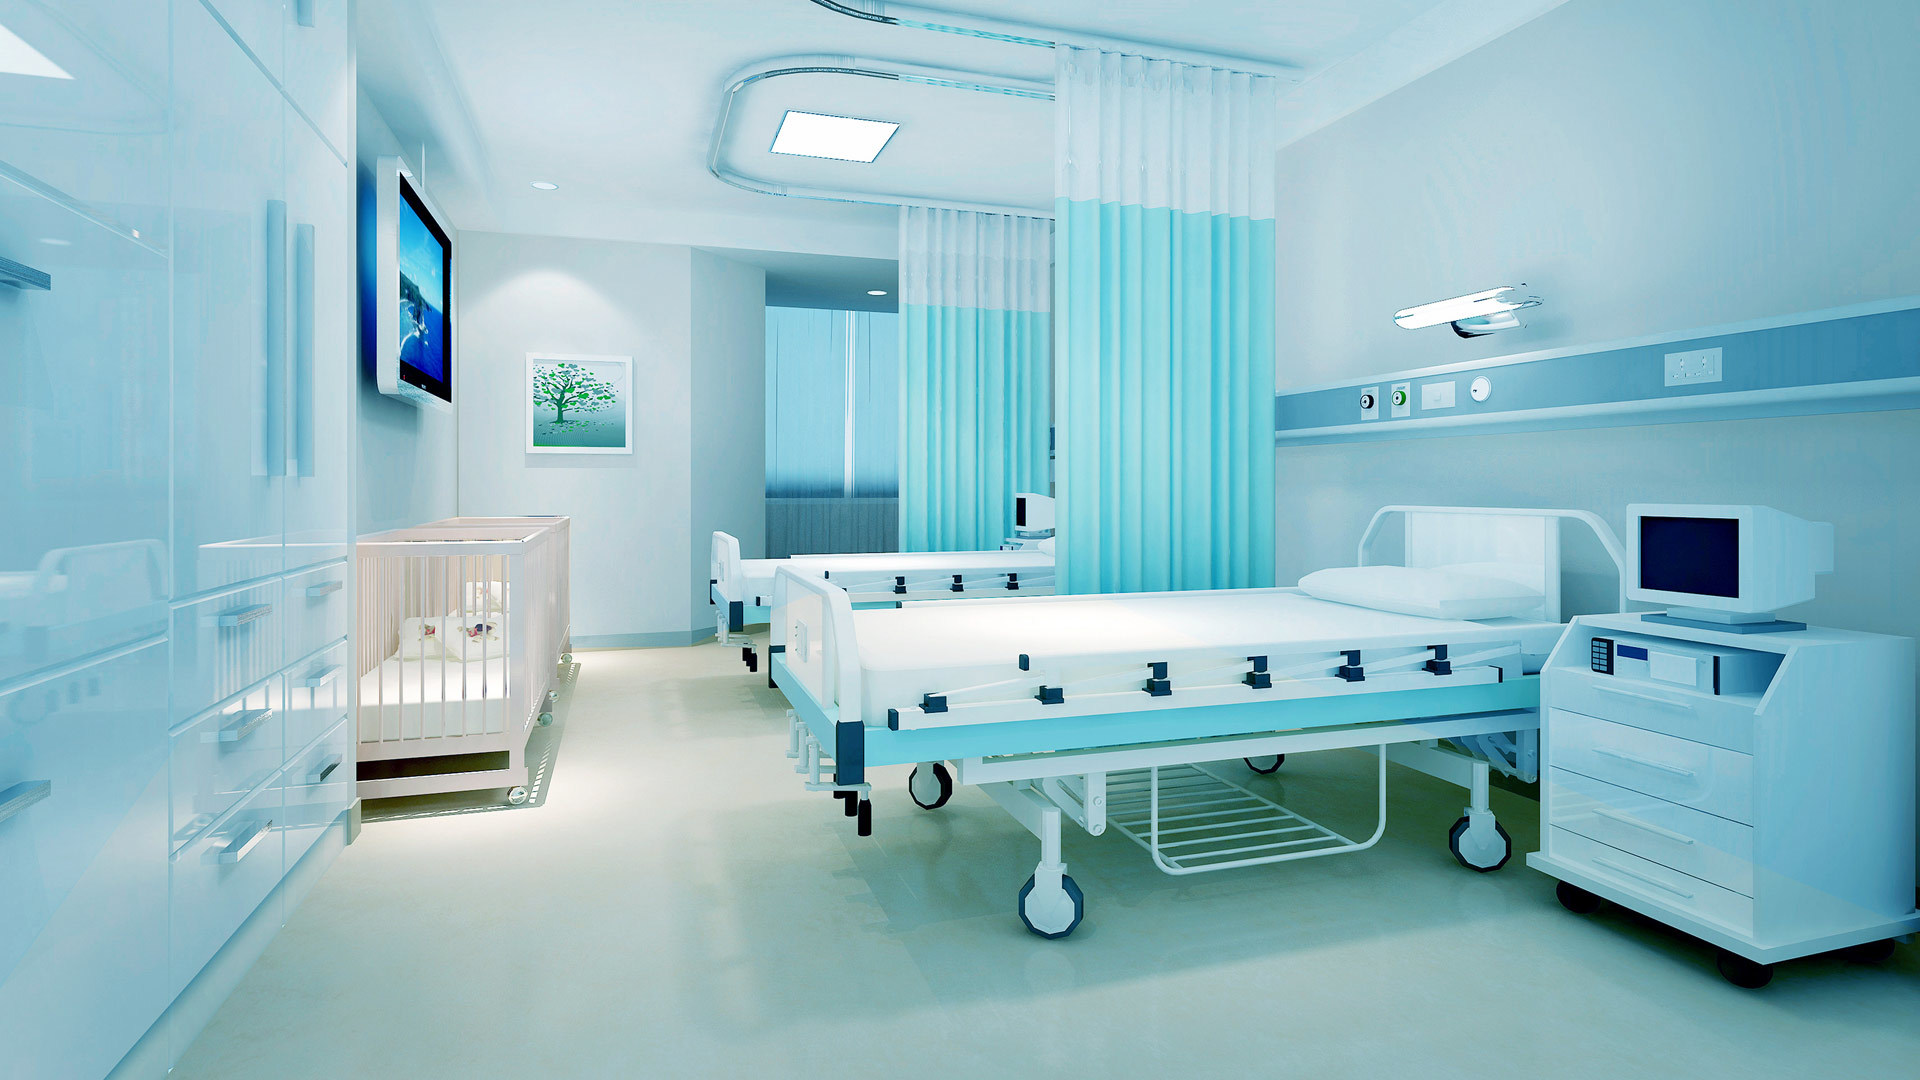 公司主要產品為手術床、護理床、病床、醫用車、床、柜、椅、手術室等系列產品。